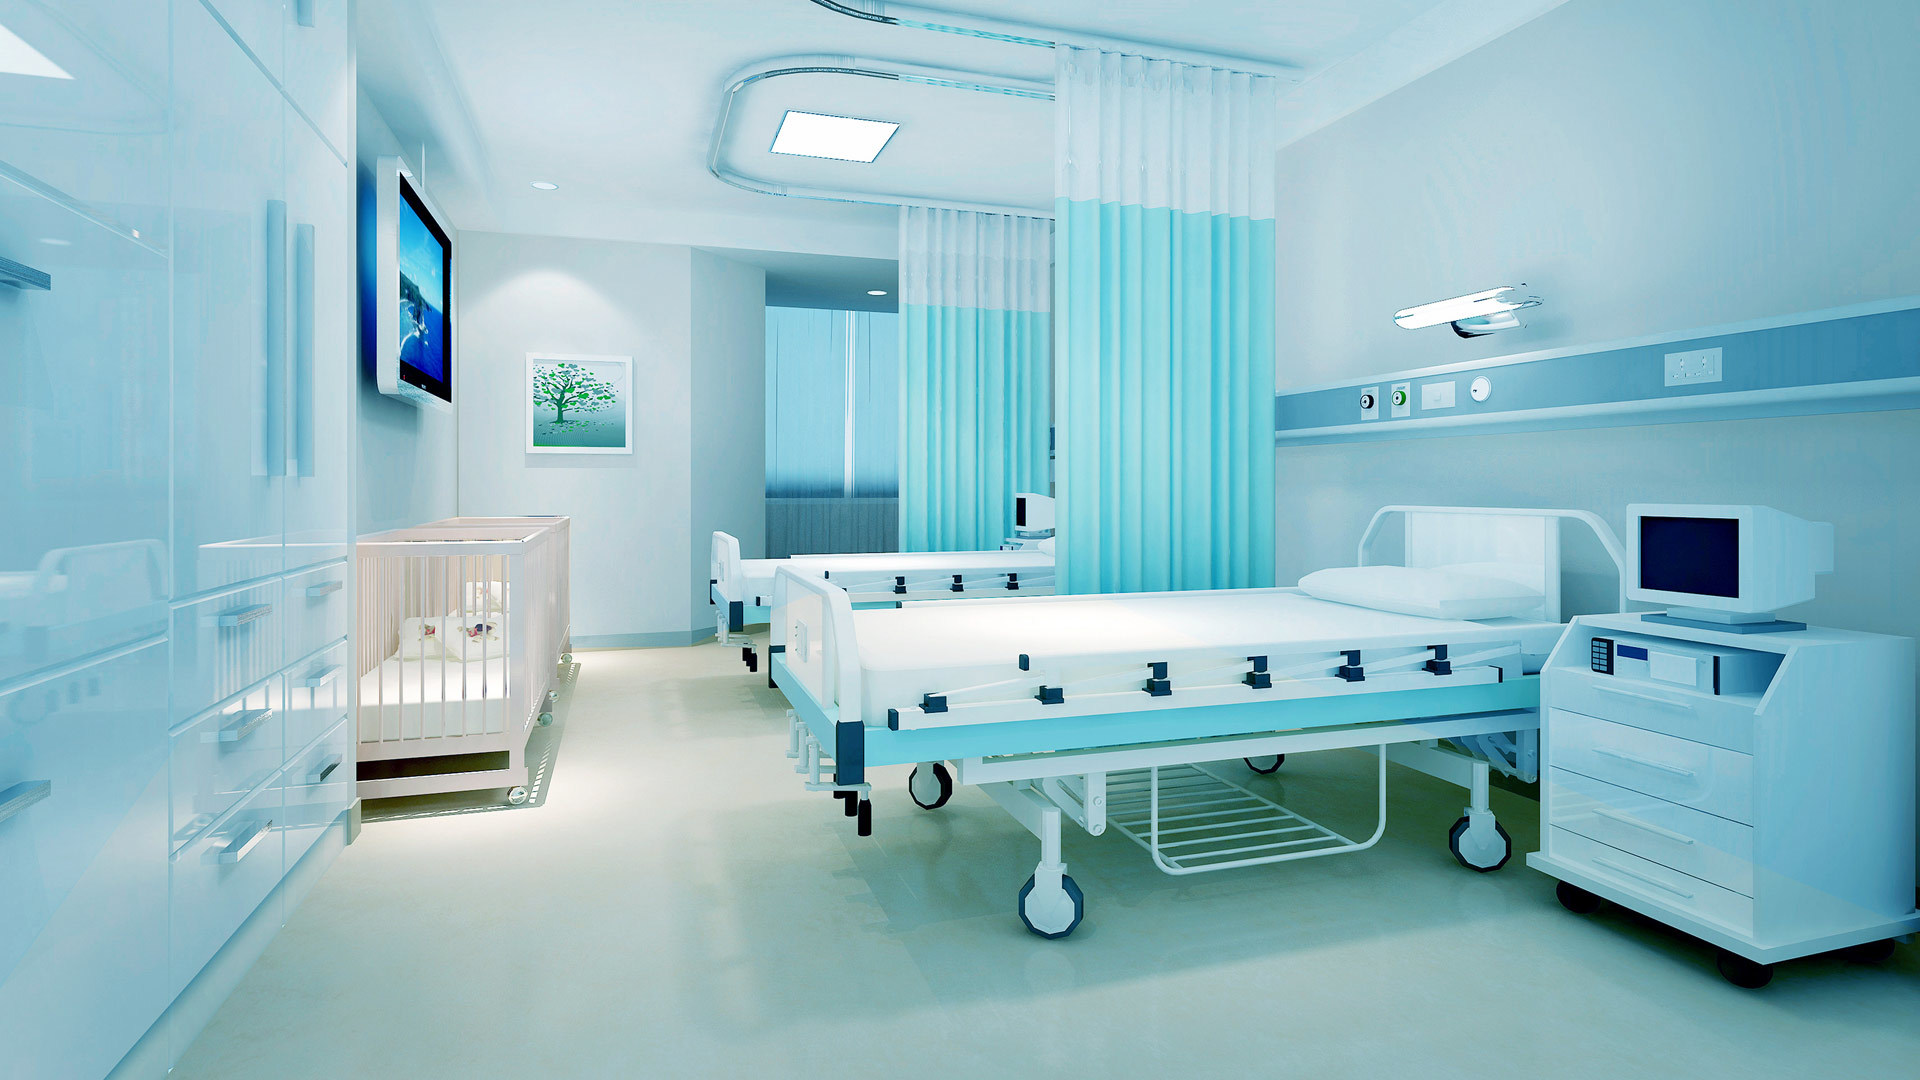 公司主要產品為手術床、護理床、病床、醫用車、床、柜、椅、手術室等系列產品。